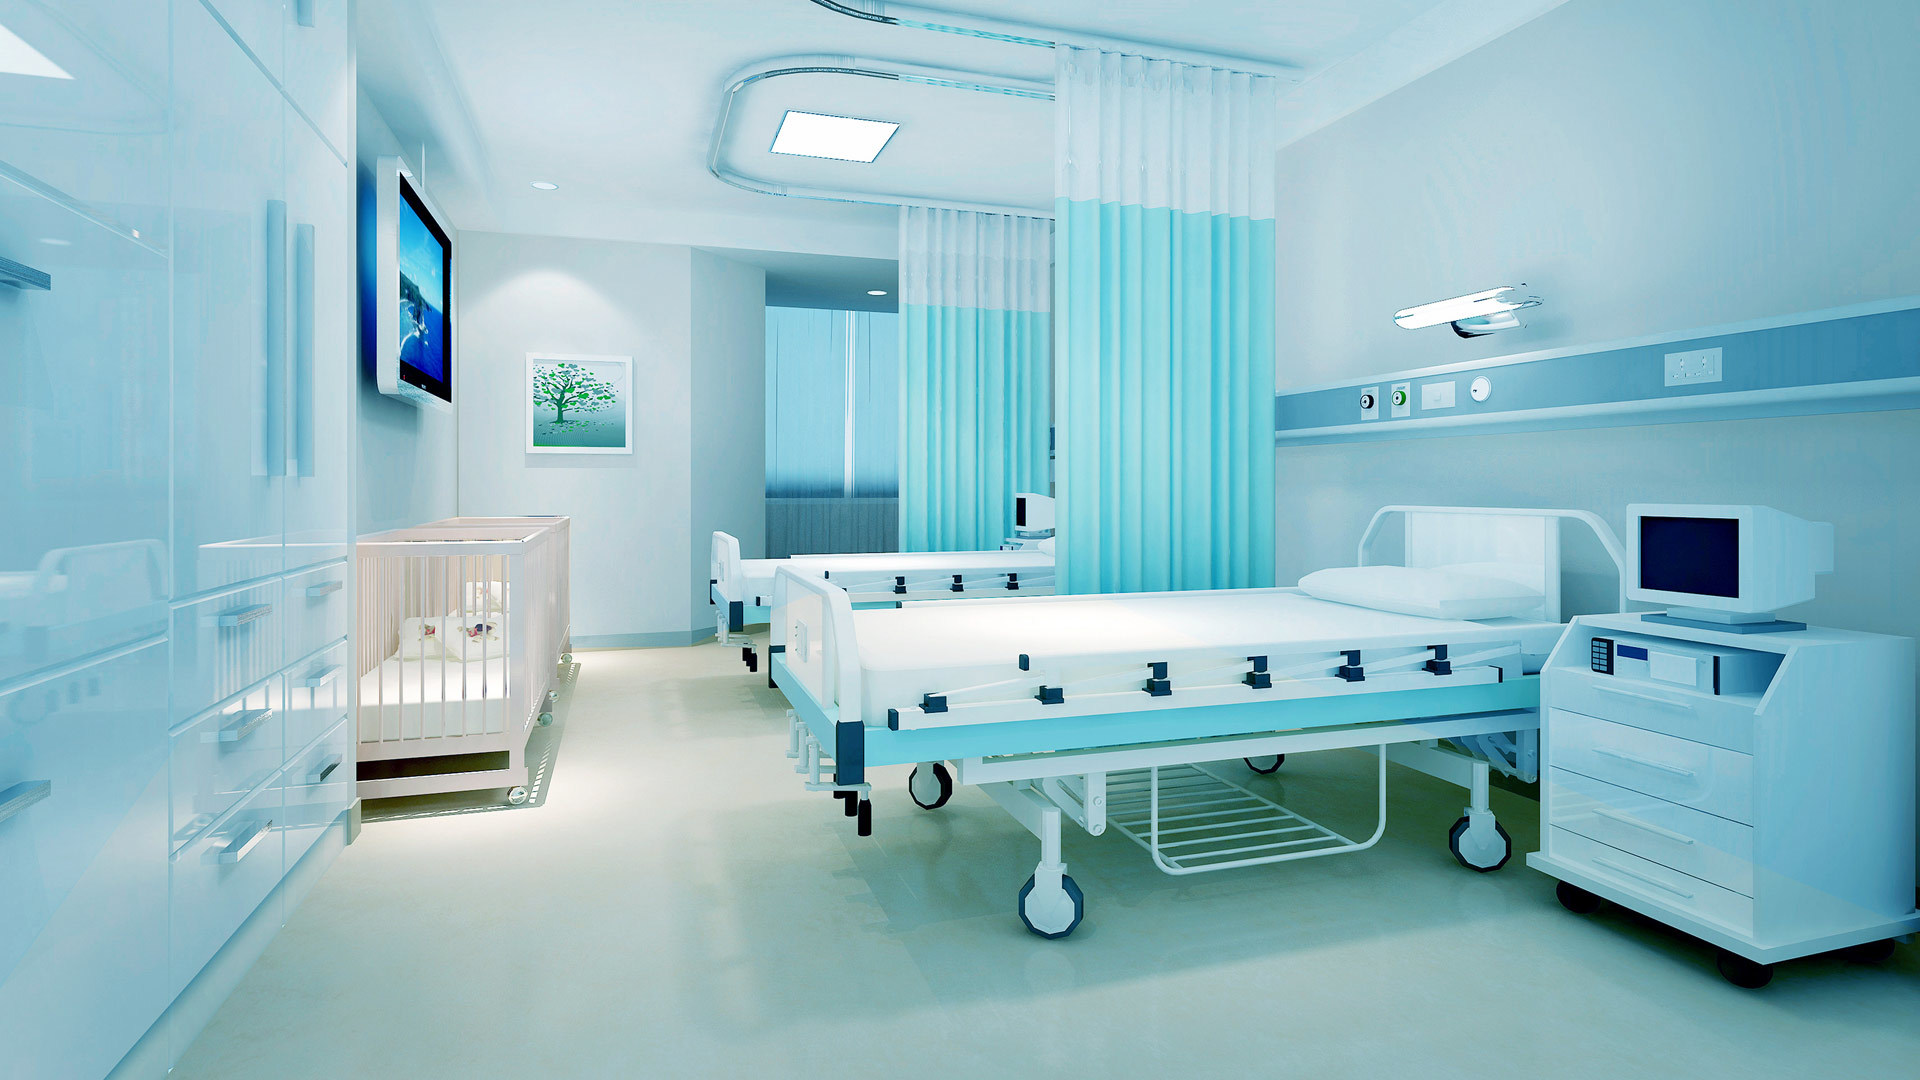 公司主要產品為手術床、護理床、病床、醫用車、床、柜、椅、手術室等系列產品。